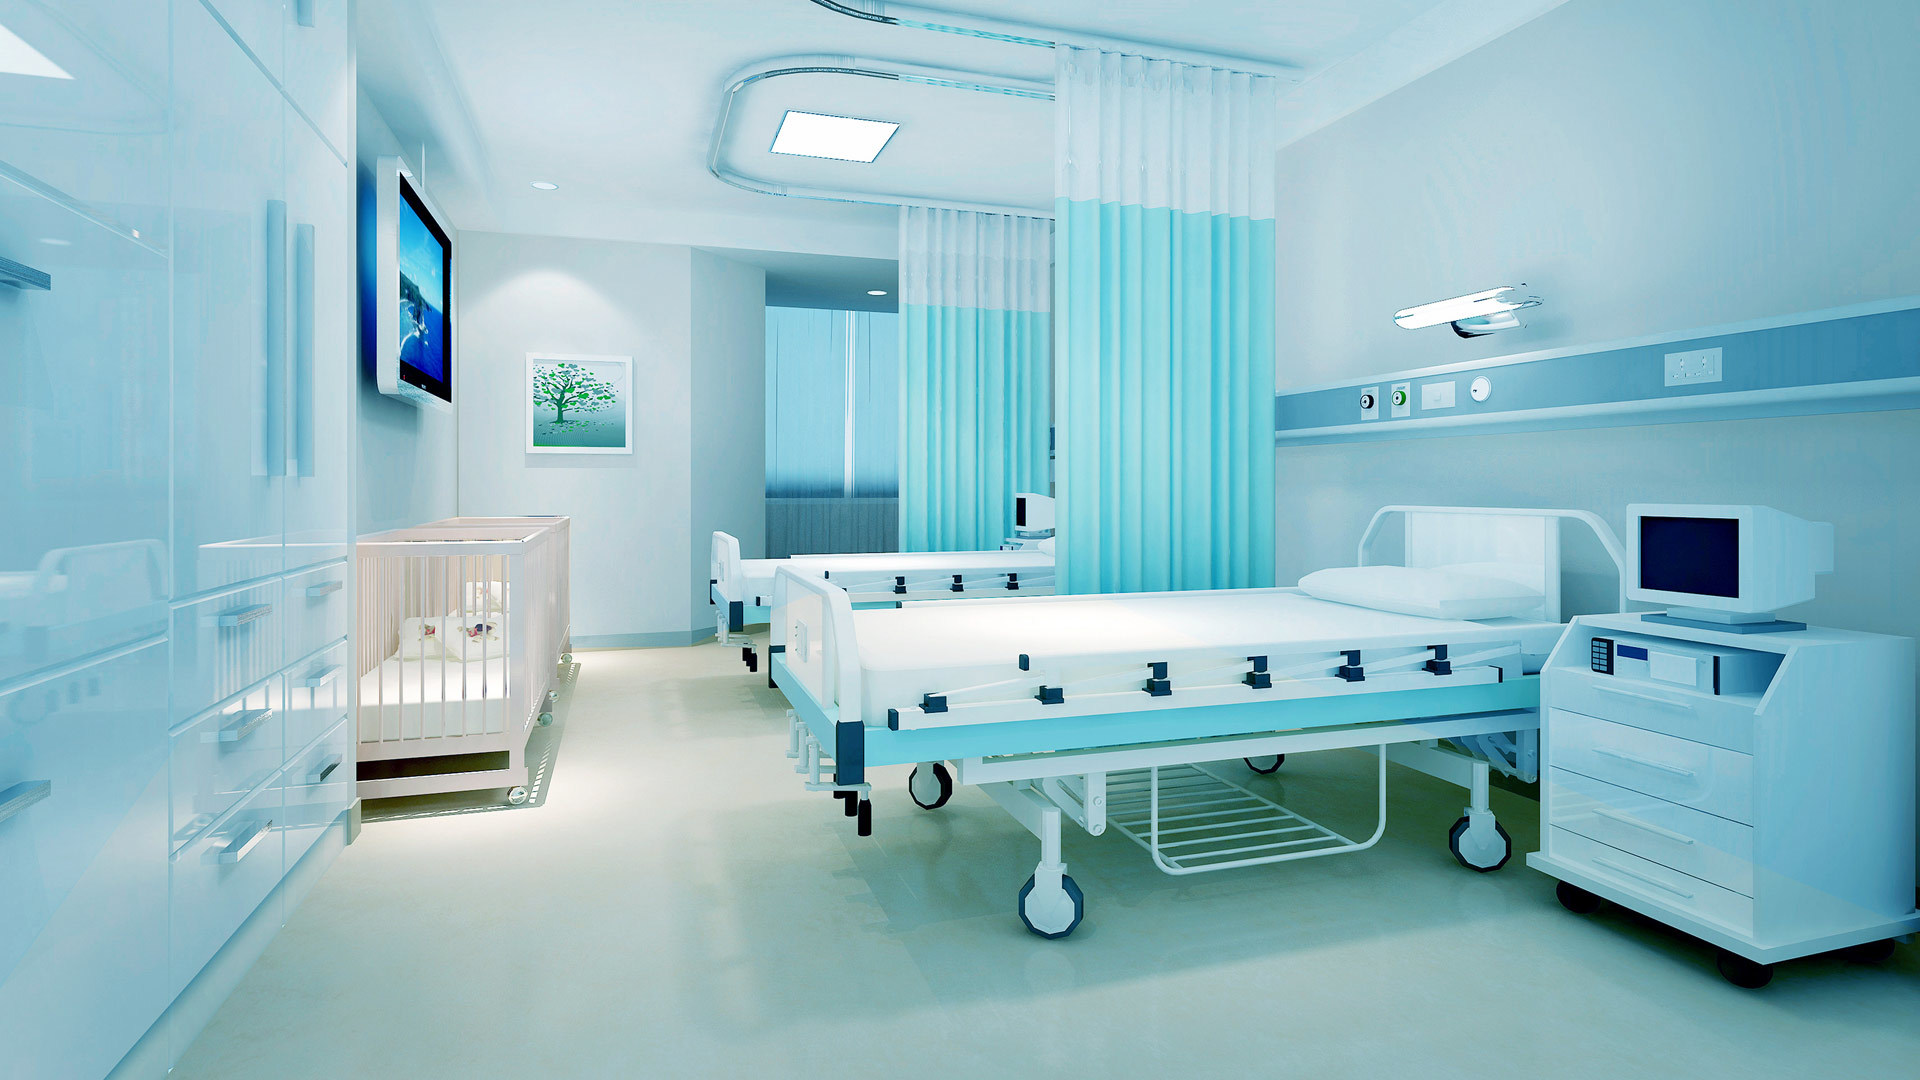 公司主要產品為手術床、護理床、病床、醫用車、床、柜、椅、手術室等系列產品。